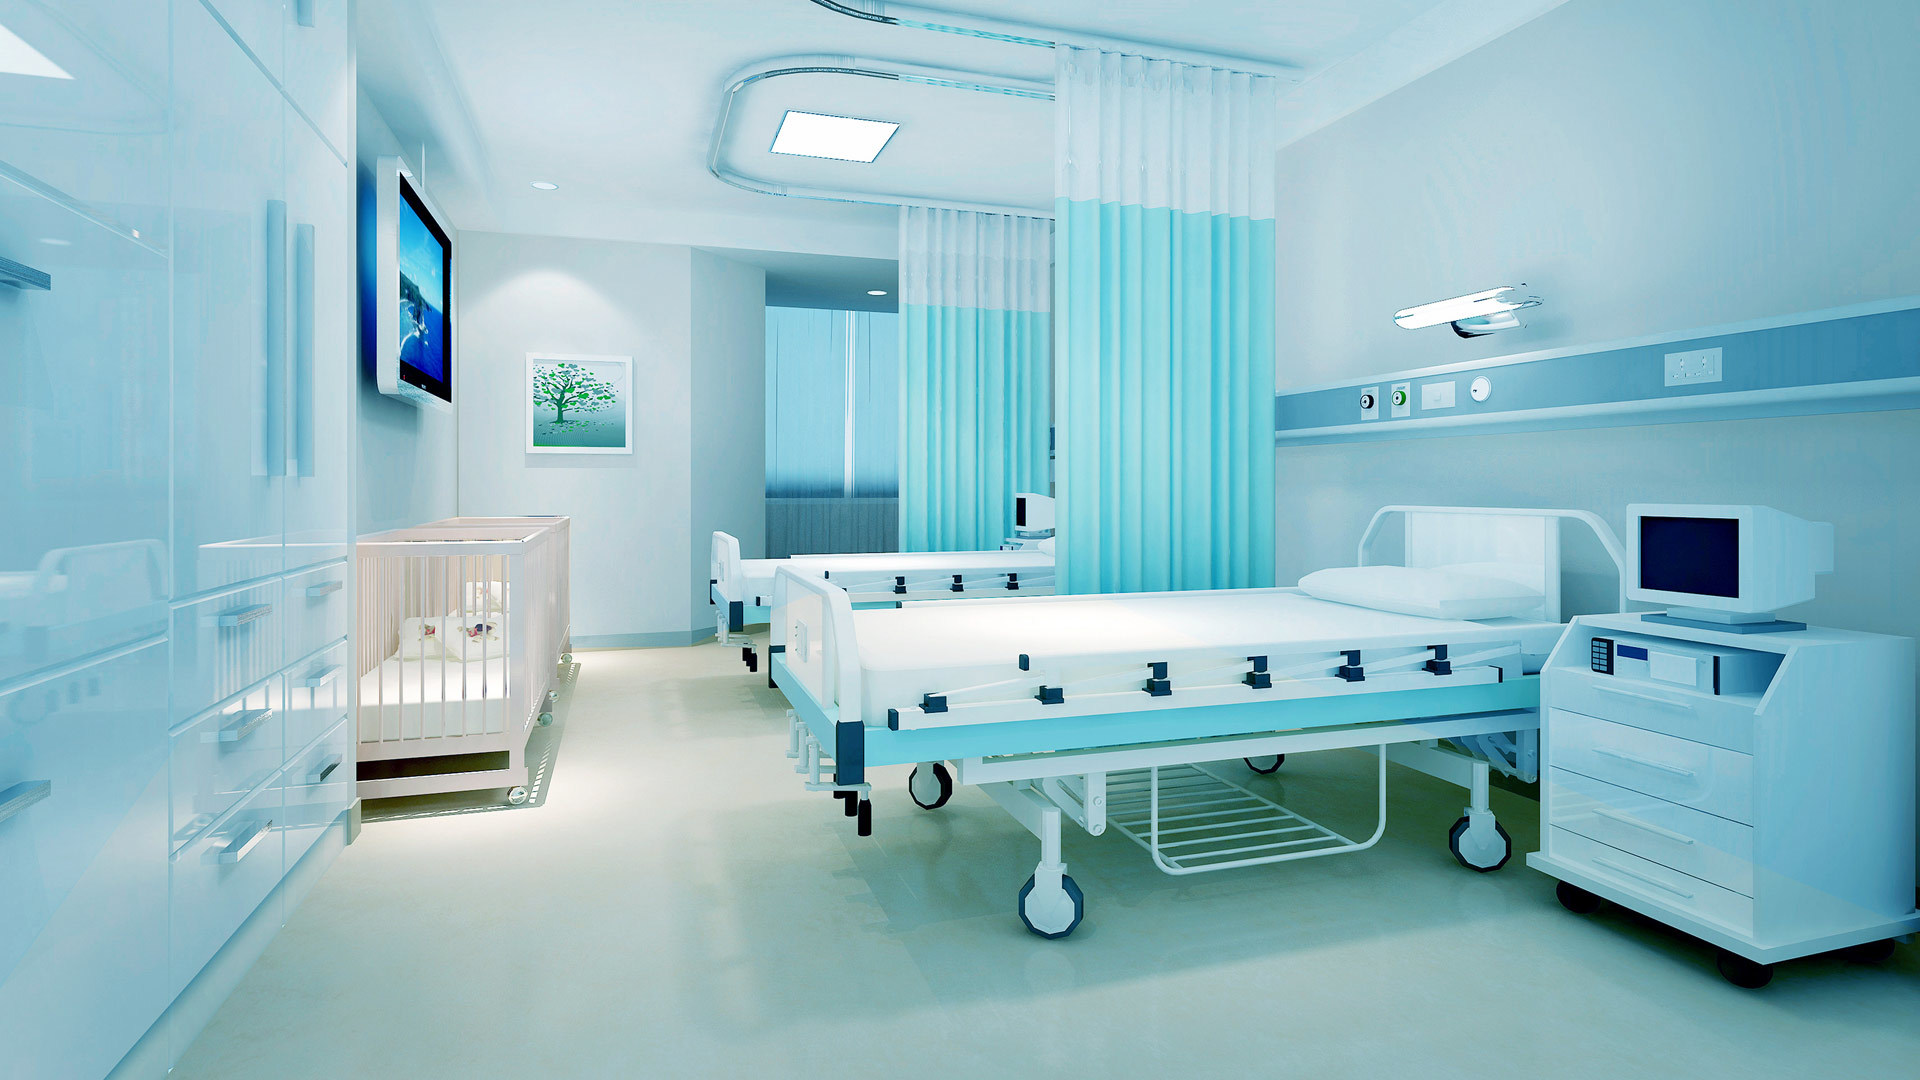 公司主要產品為手術床、護理床、病床、醫用車、床、柜、椅、手術室等系列產品。